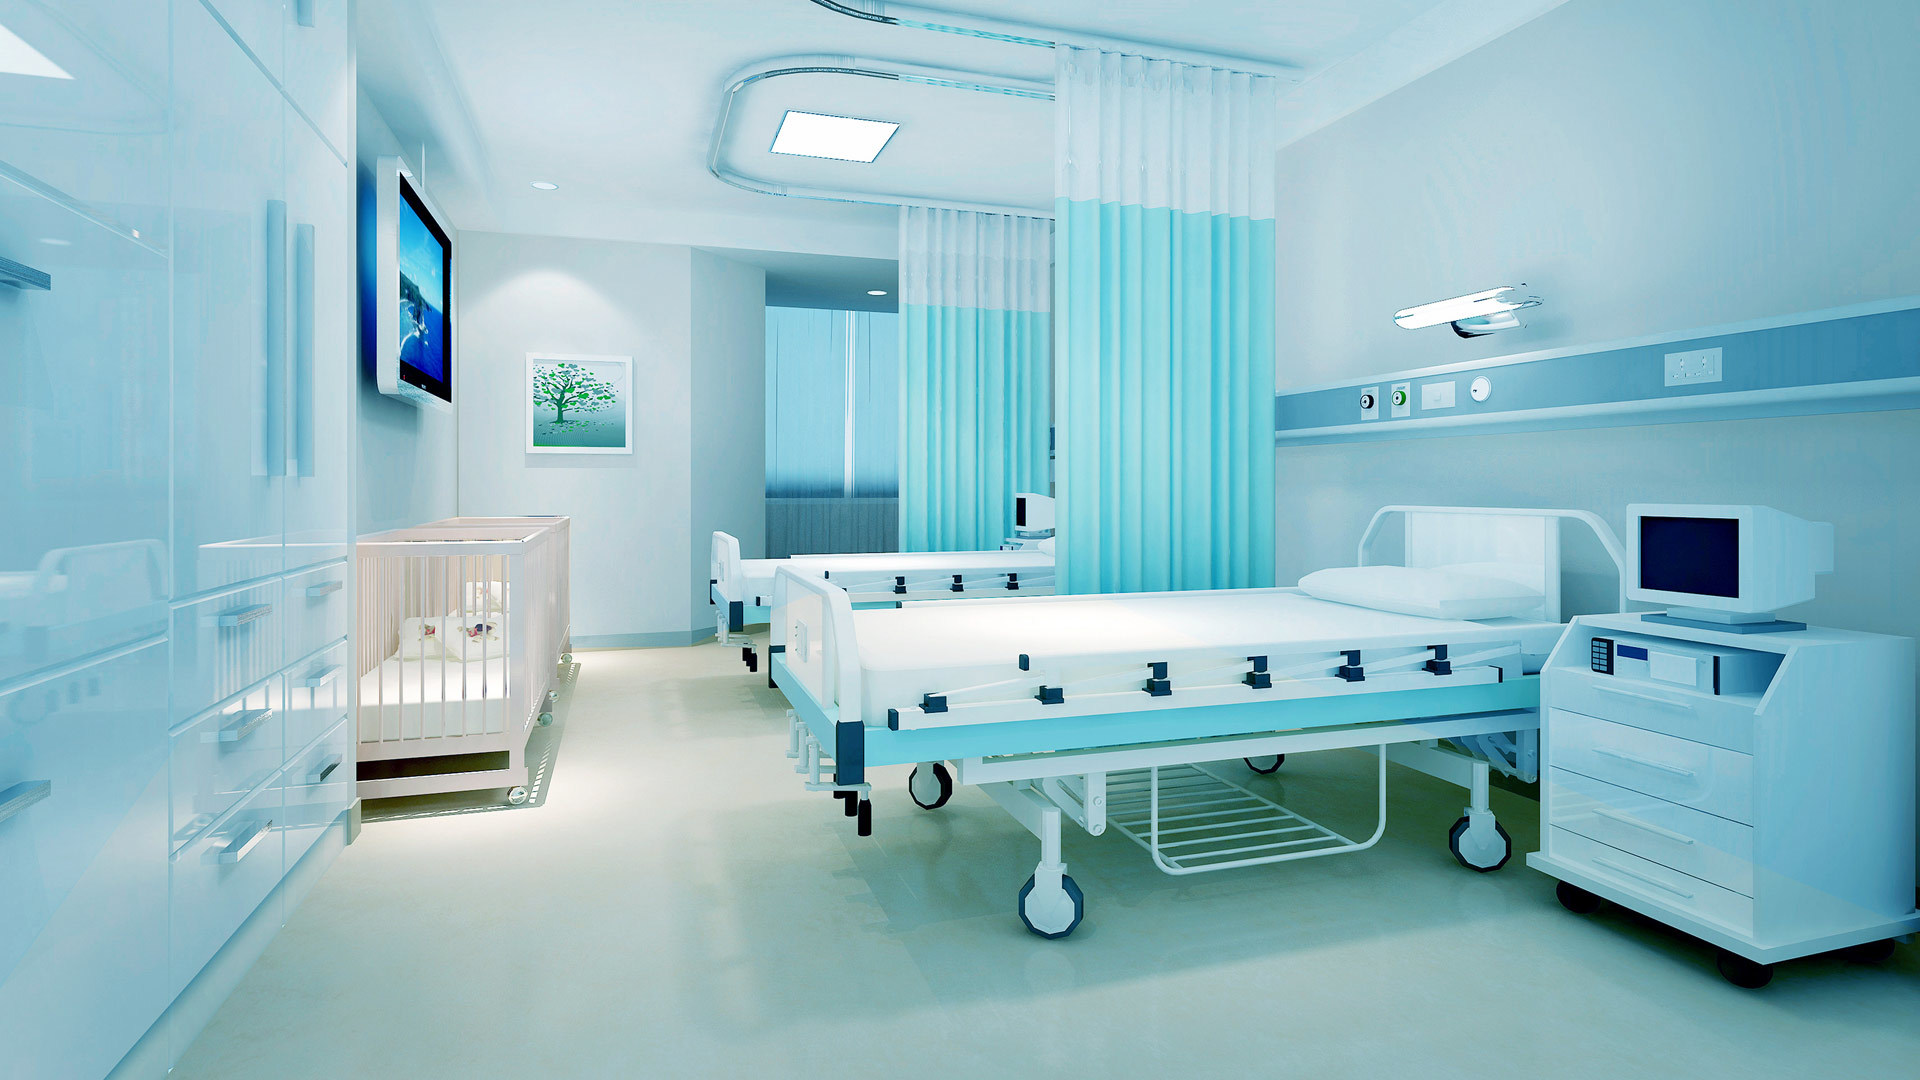 公司主要產品為手術床、護理床、病床、醫用車、床、柜、椅、手術室等系列產品。